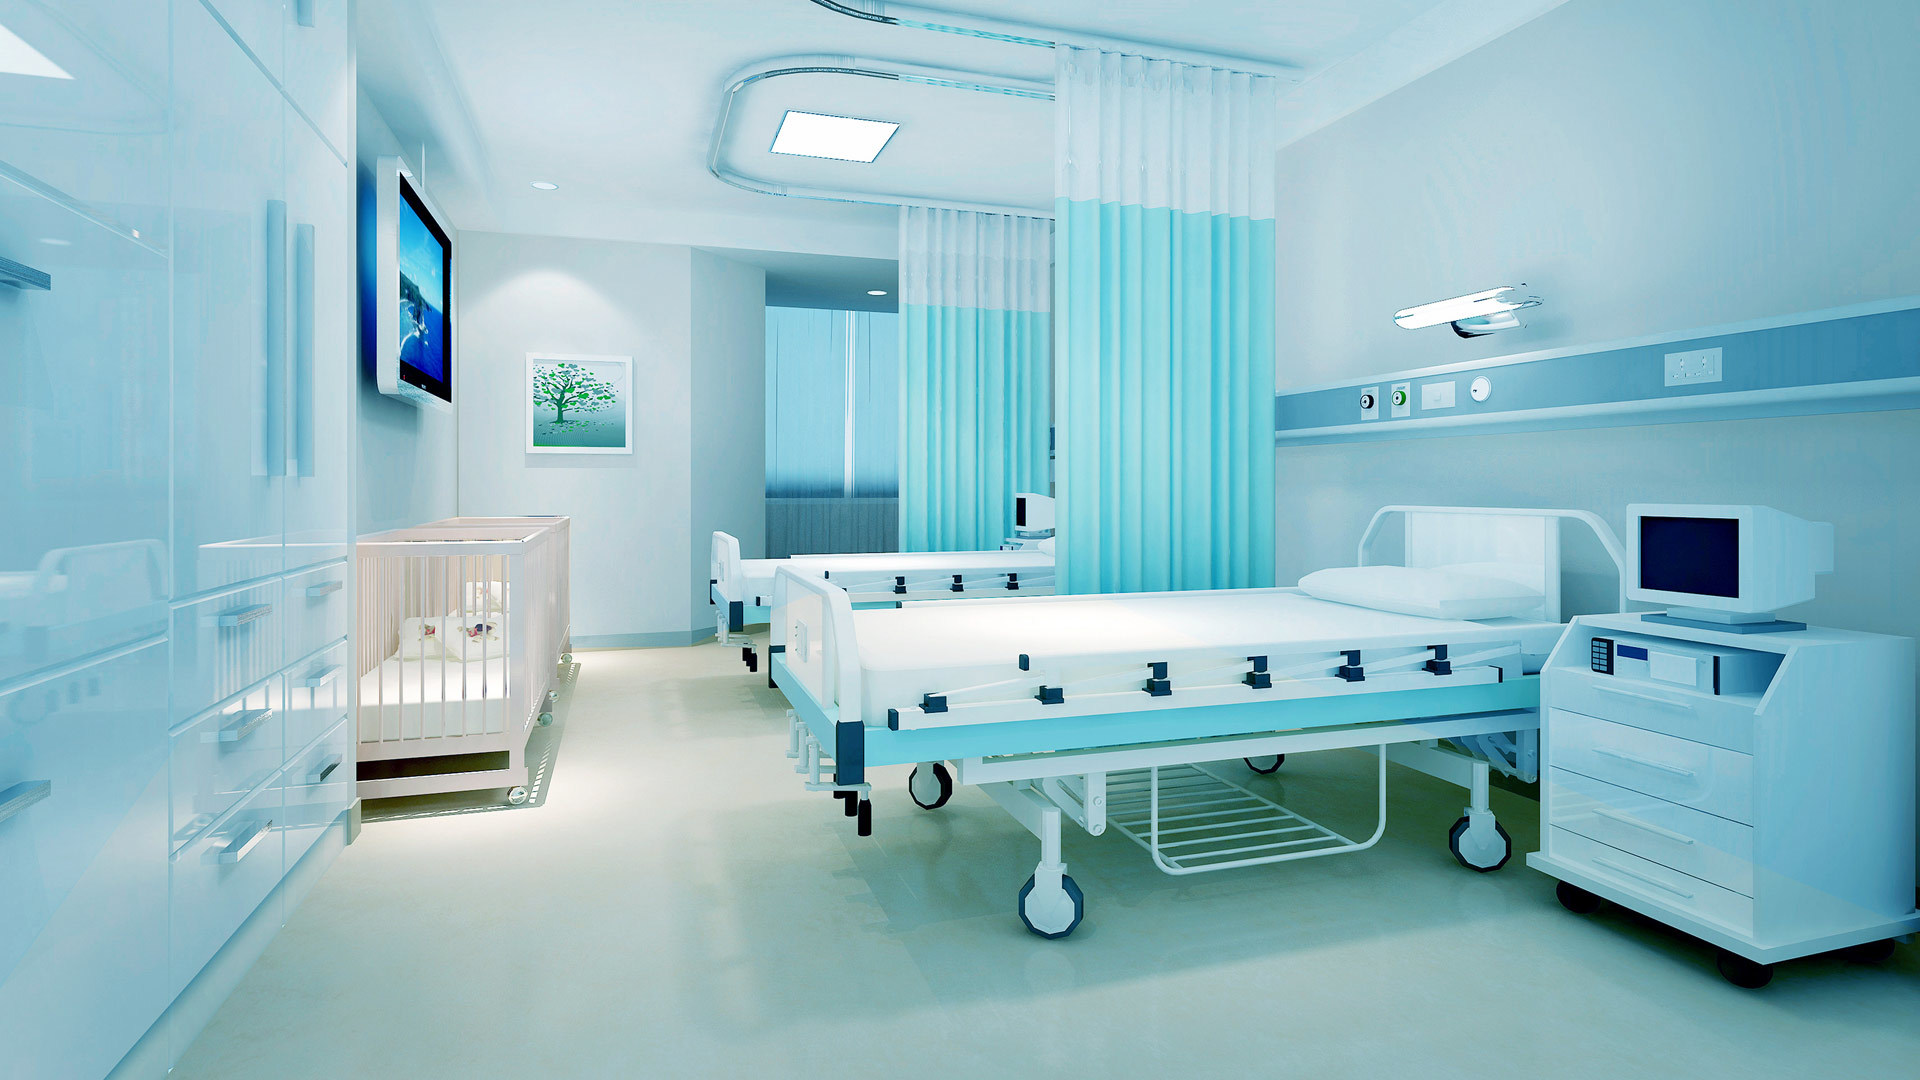 公司主要產品為手術床、護理床、病床、醫用車、床、柜、椅、手術室等系列產品。